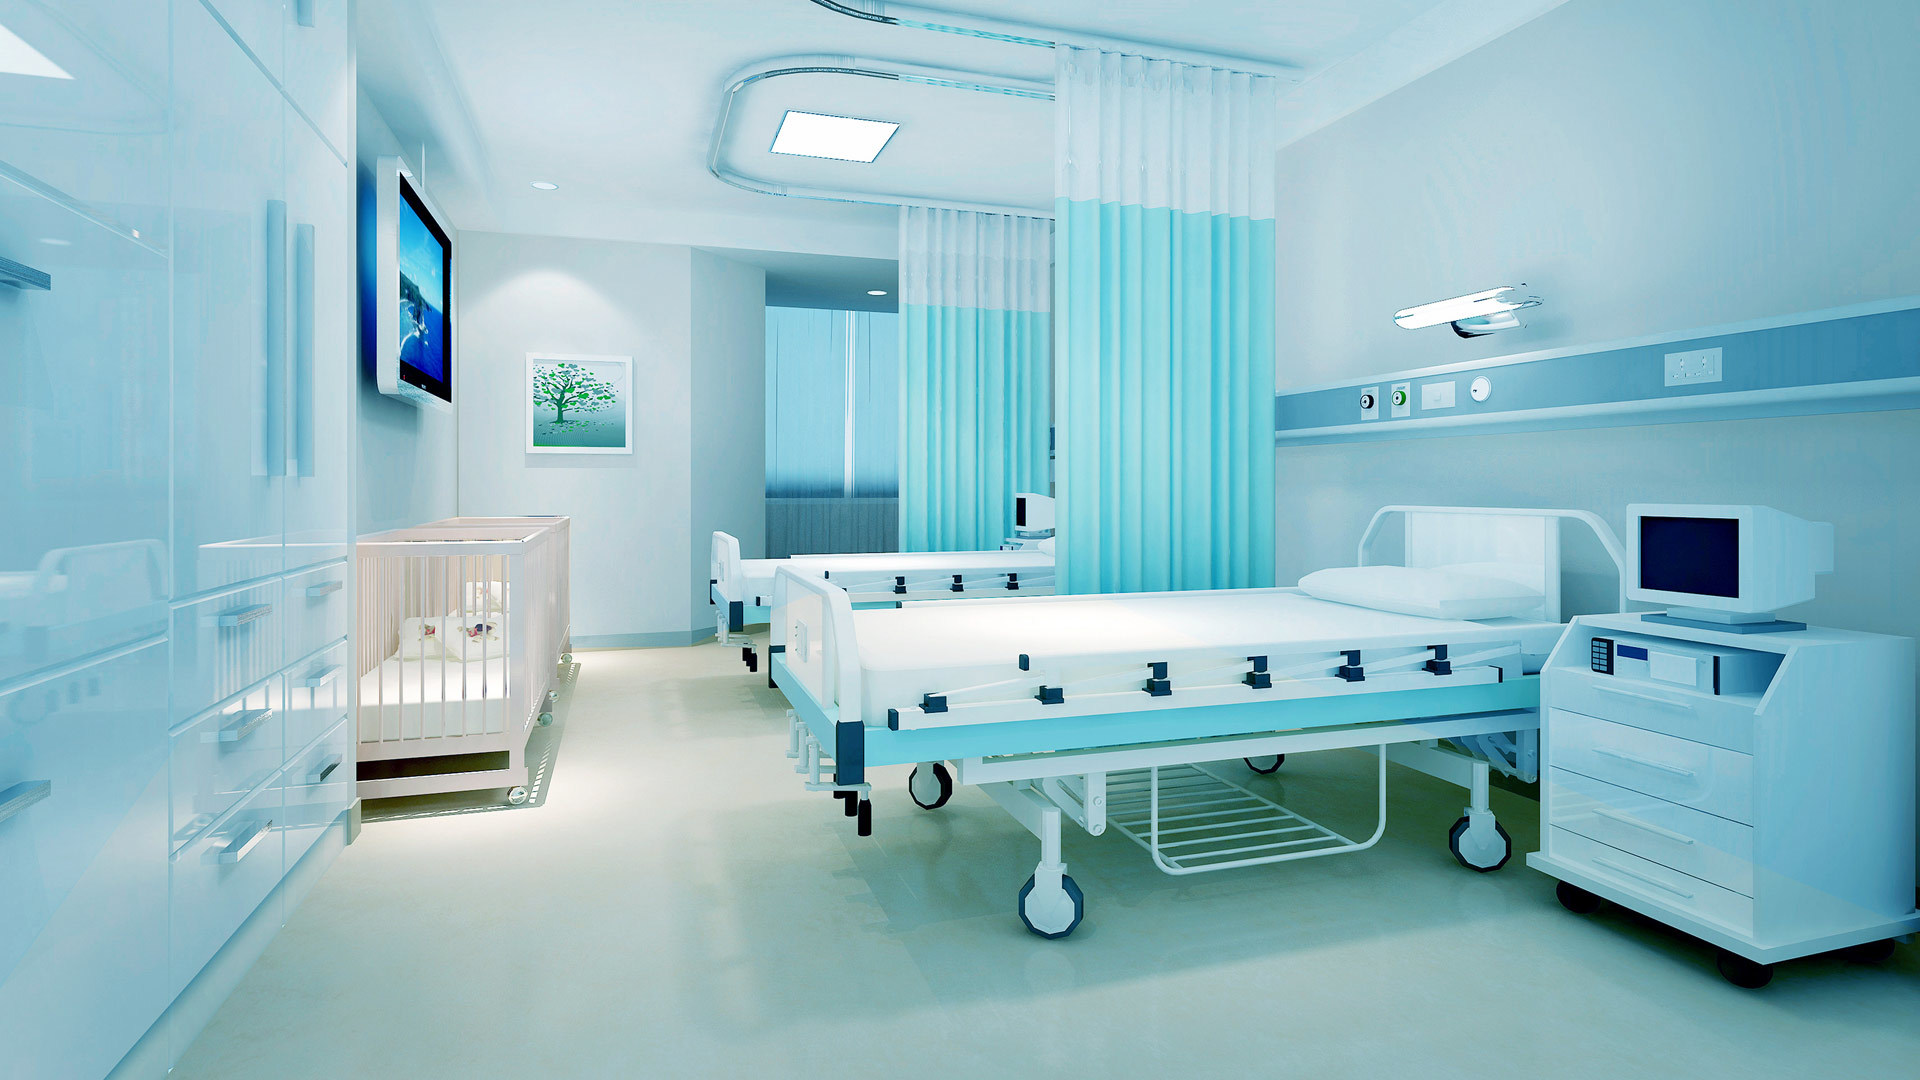 公司主要產品為手術床、護理床、病床、醫用車、床、柜、椅、手術室等系列產品。